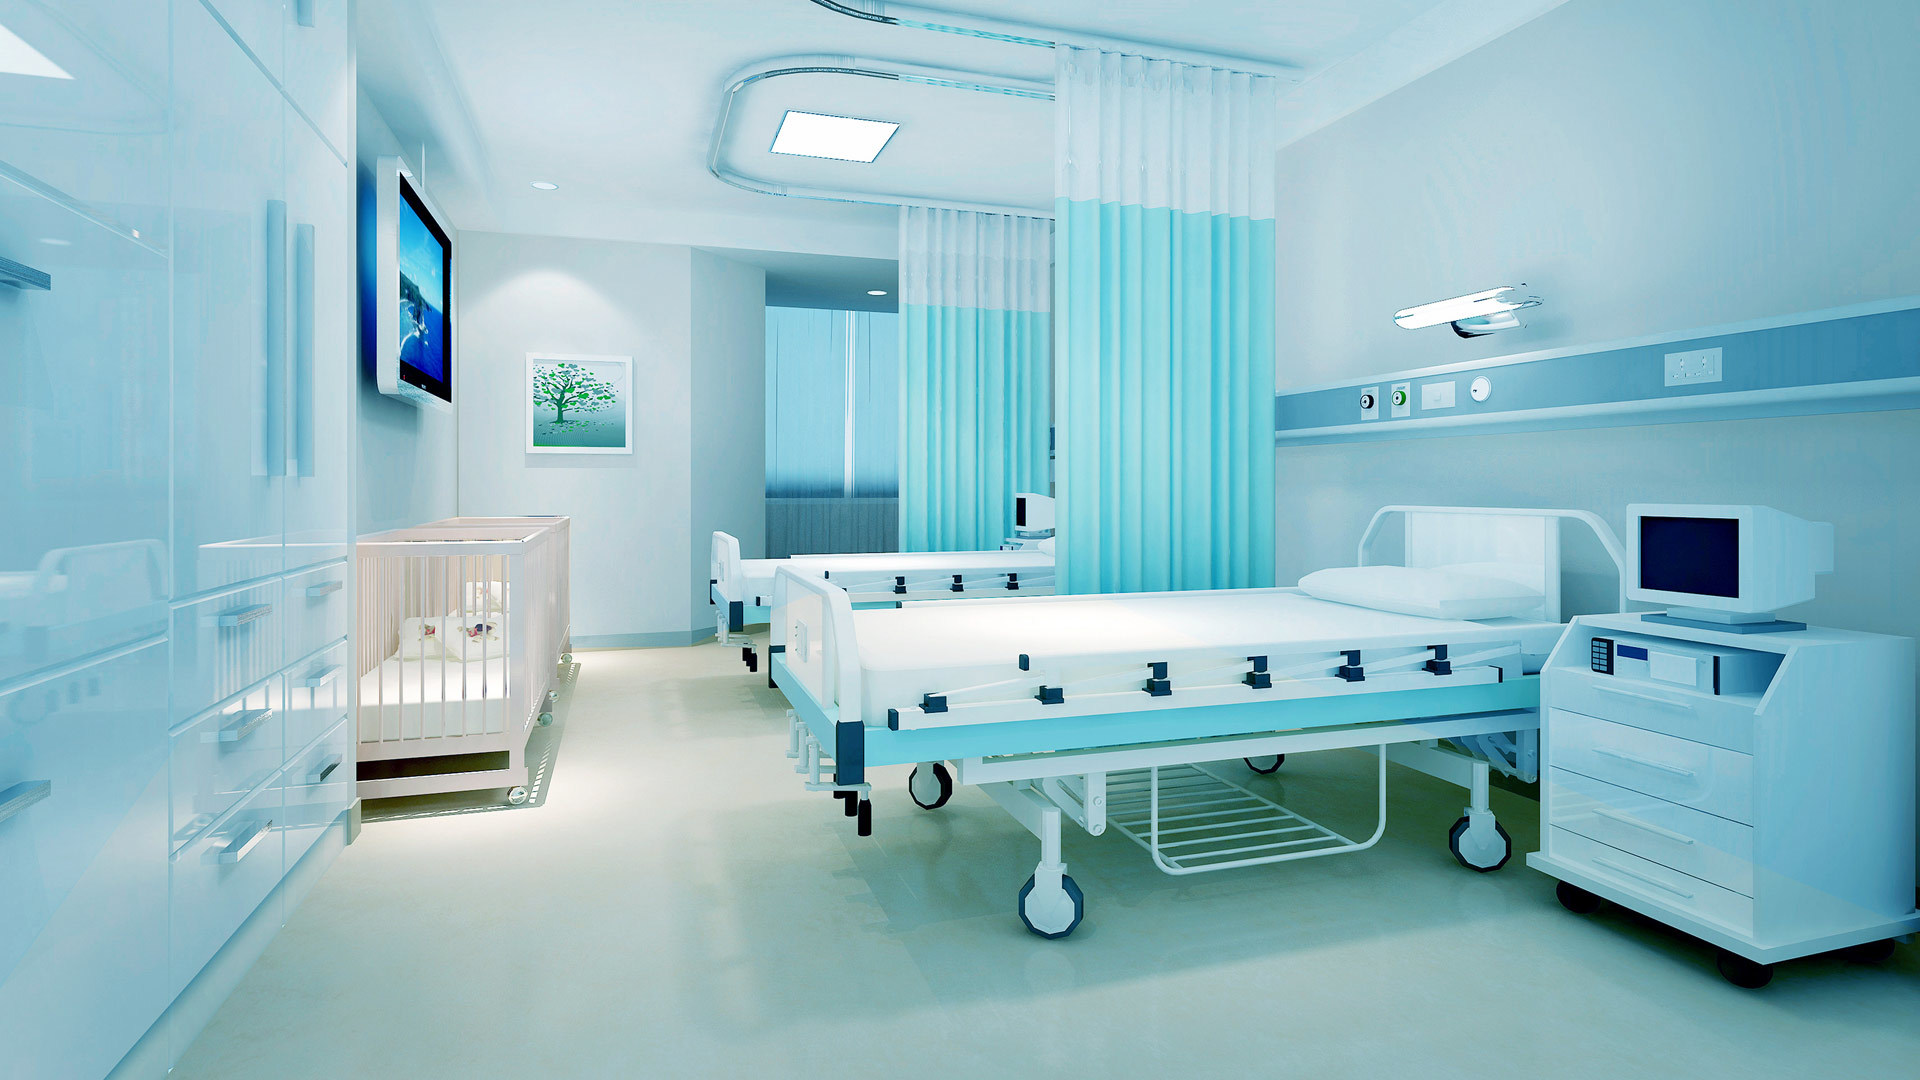 公司主要產品為手術床、護理床、病床、醫用車、床、柜、椅、手術室等系列產品。